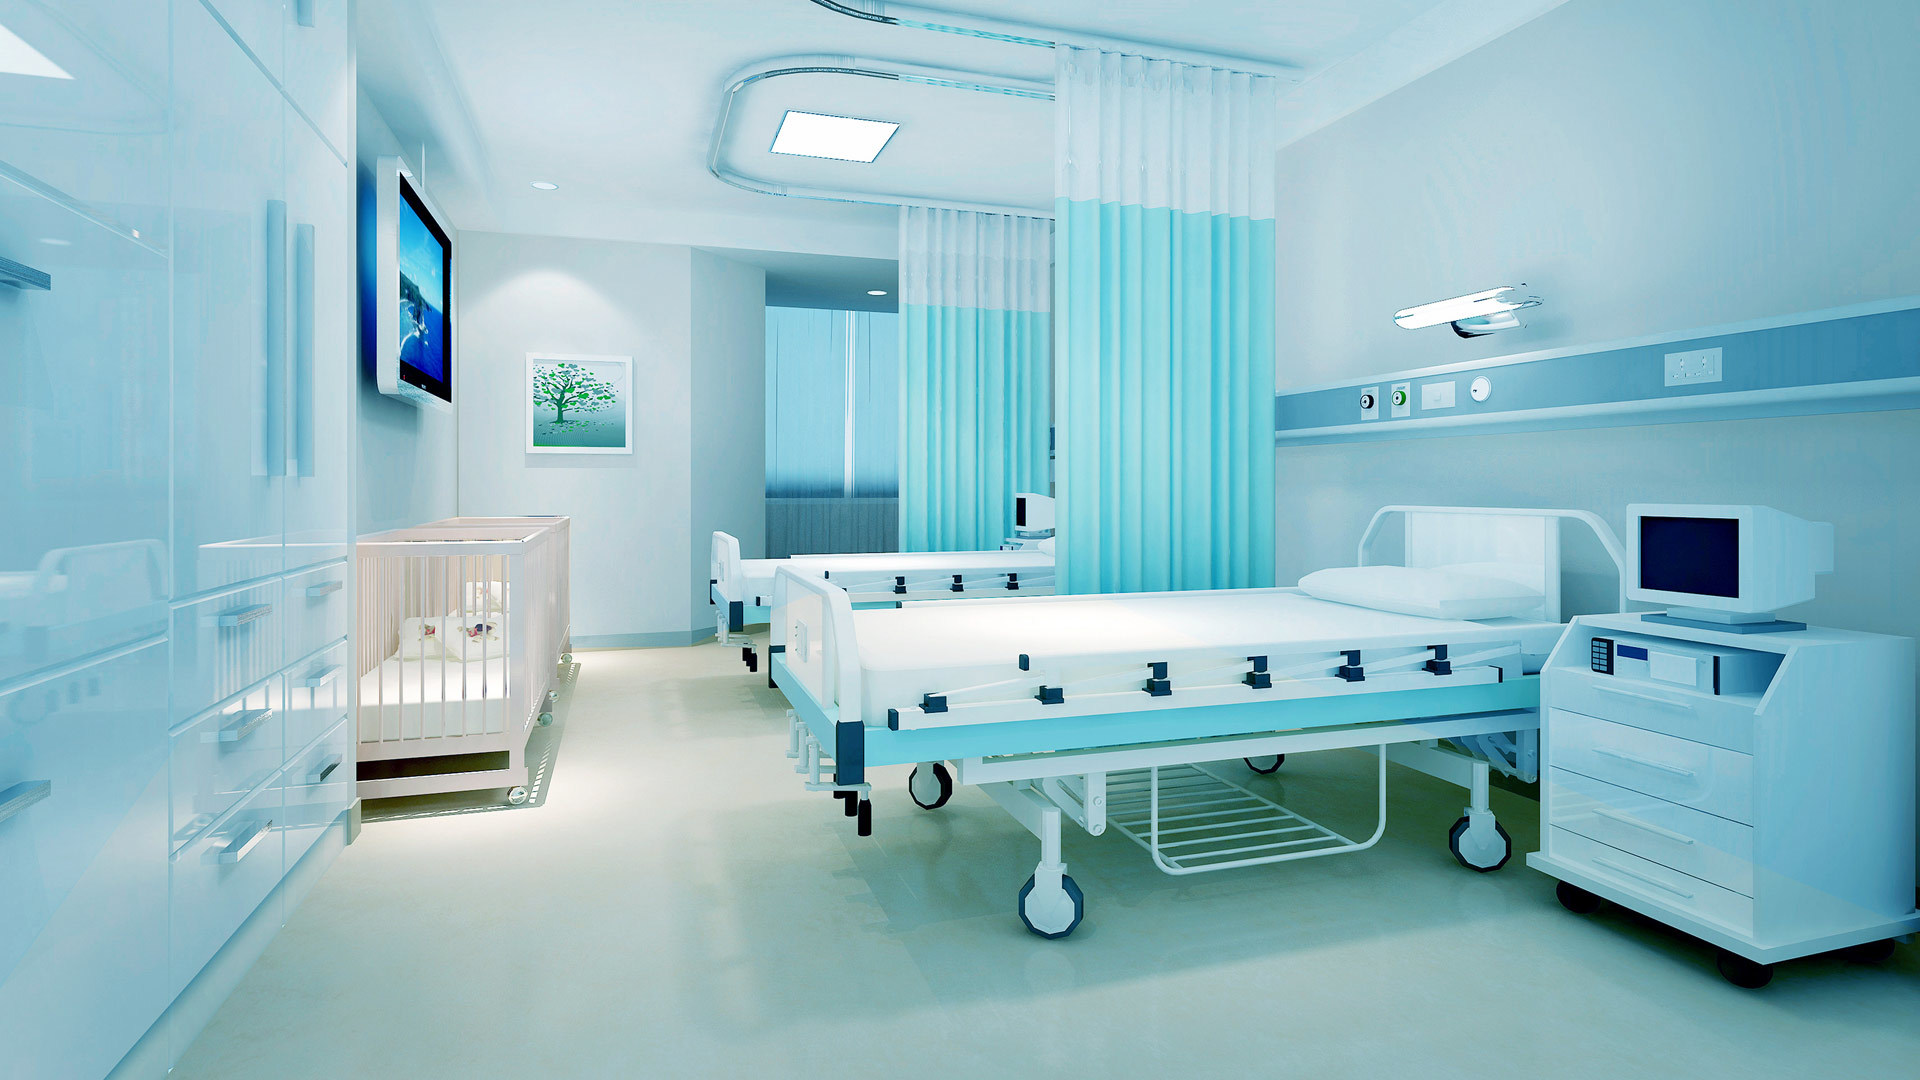 公司主要產品為手術床、護理床、病床、醫用車、床、柜、椅、手術室等系列產品。